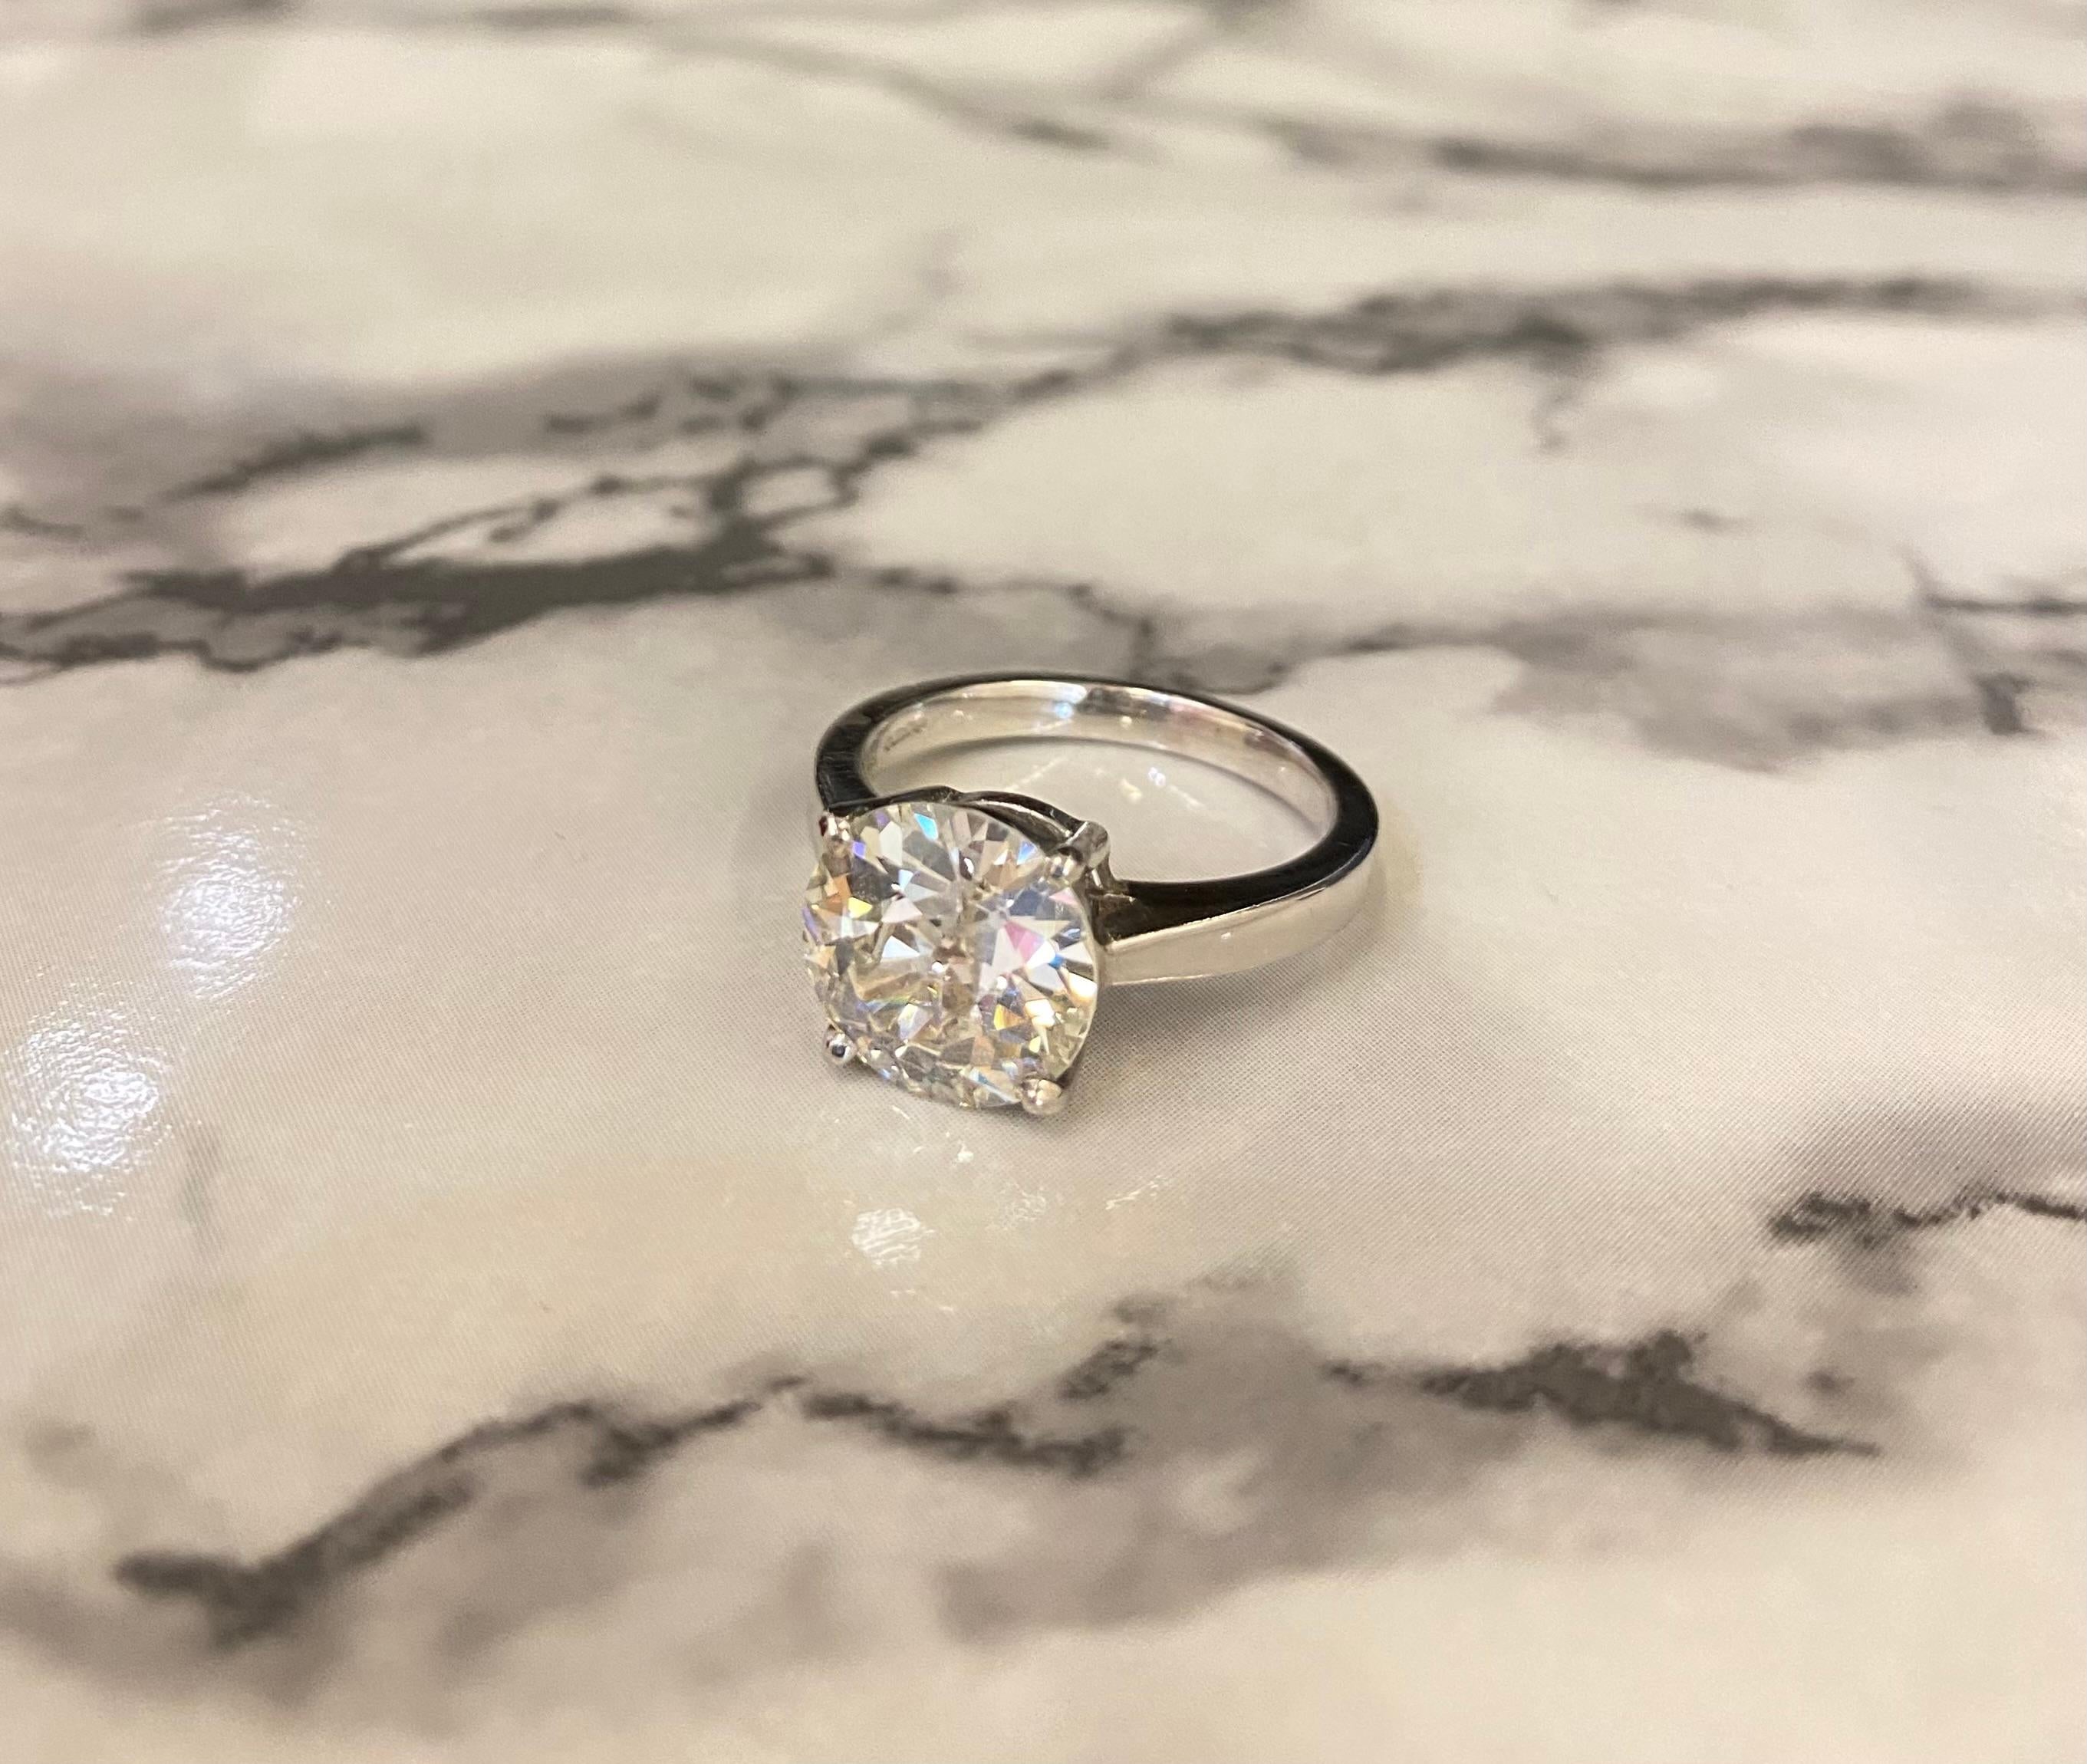 Cette exquise bague à diamant de 3,45 carats, taillée à l'ancienne, est un véritable trésor intemporel. Réalisée avec la plus grande précision et le plus grand souci du détail, cette bague met en valeur la beauté et l'éclat exceptionnels d'un